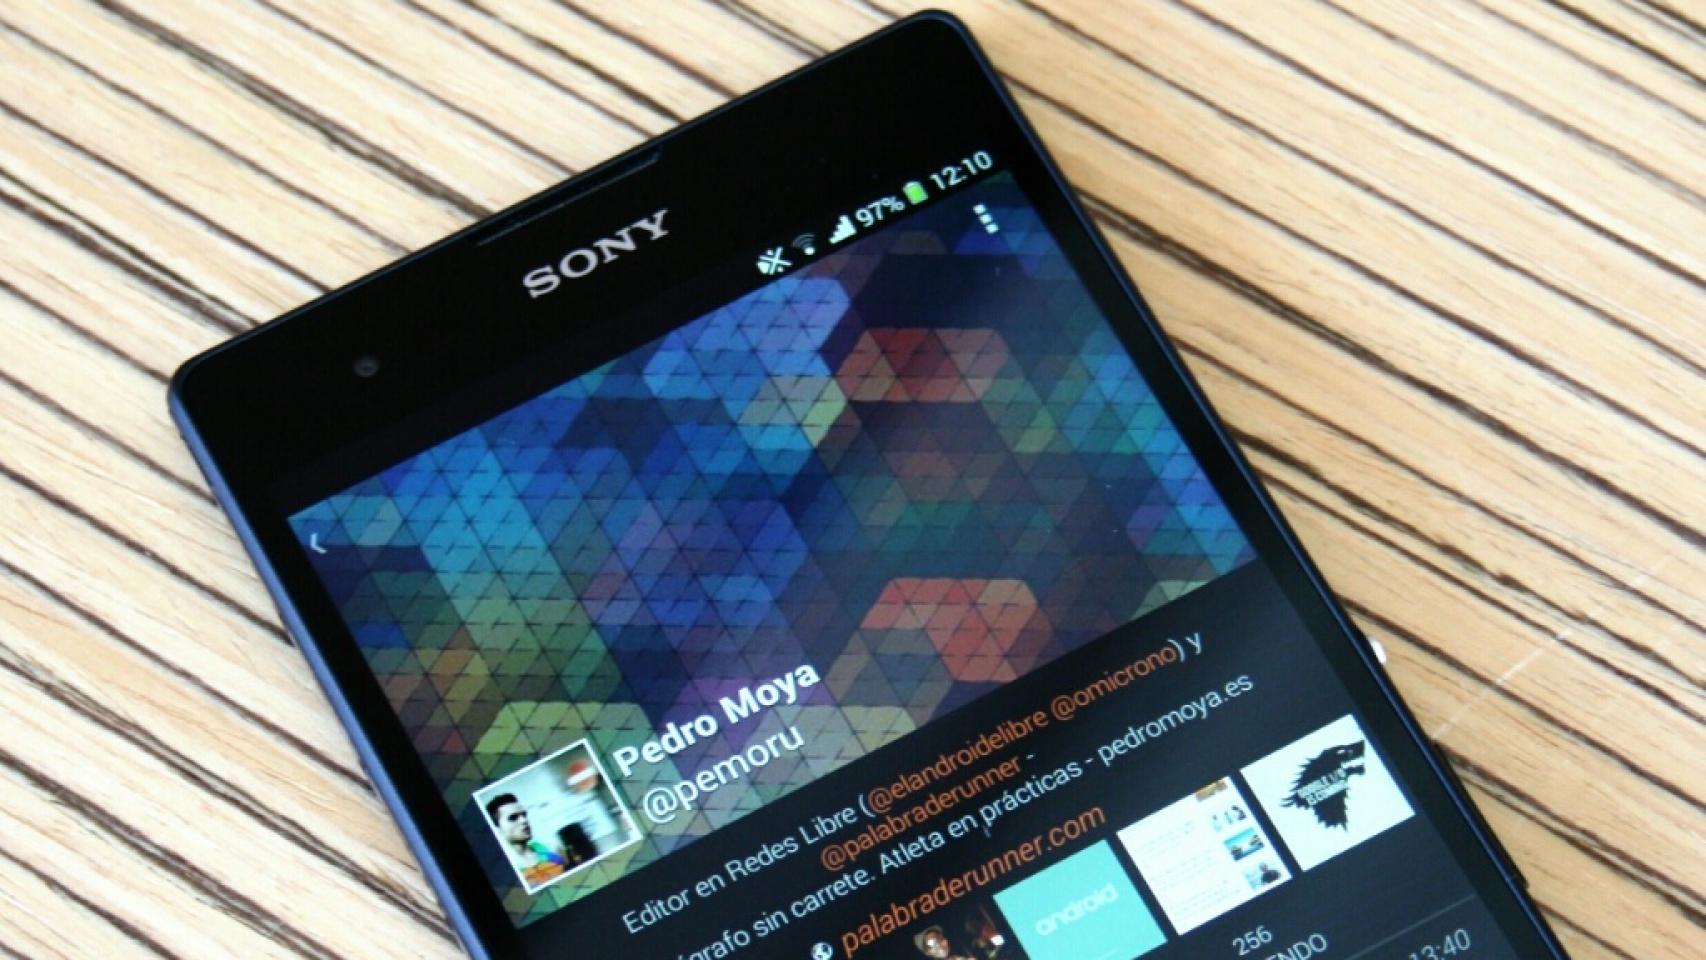 Los Sony Xperia ya pueden mover apps a la SD desde su última actualización a KitKat